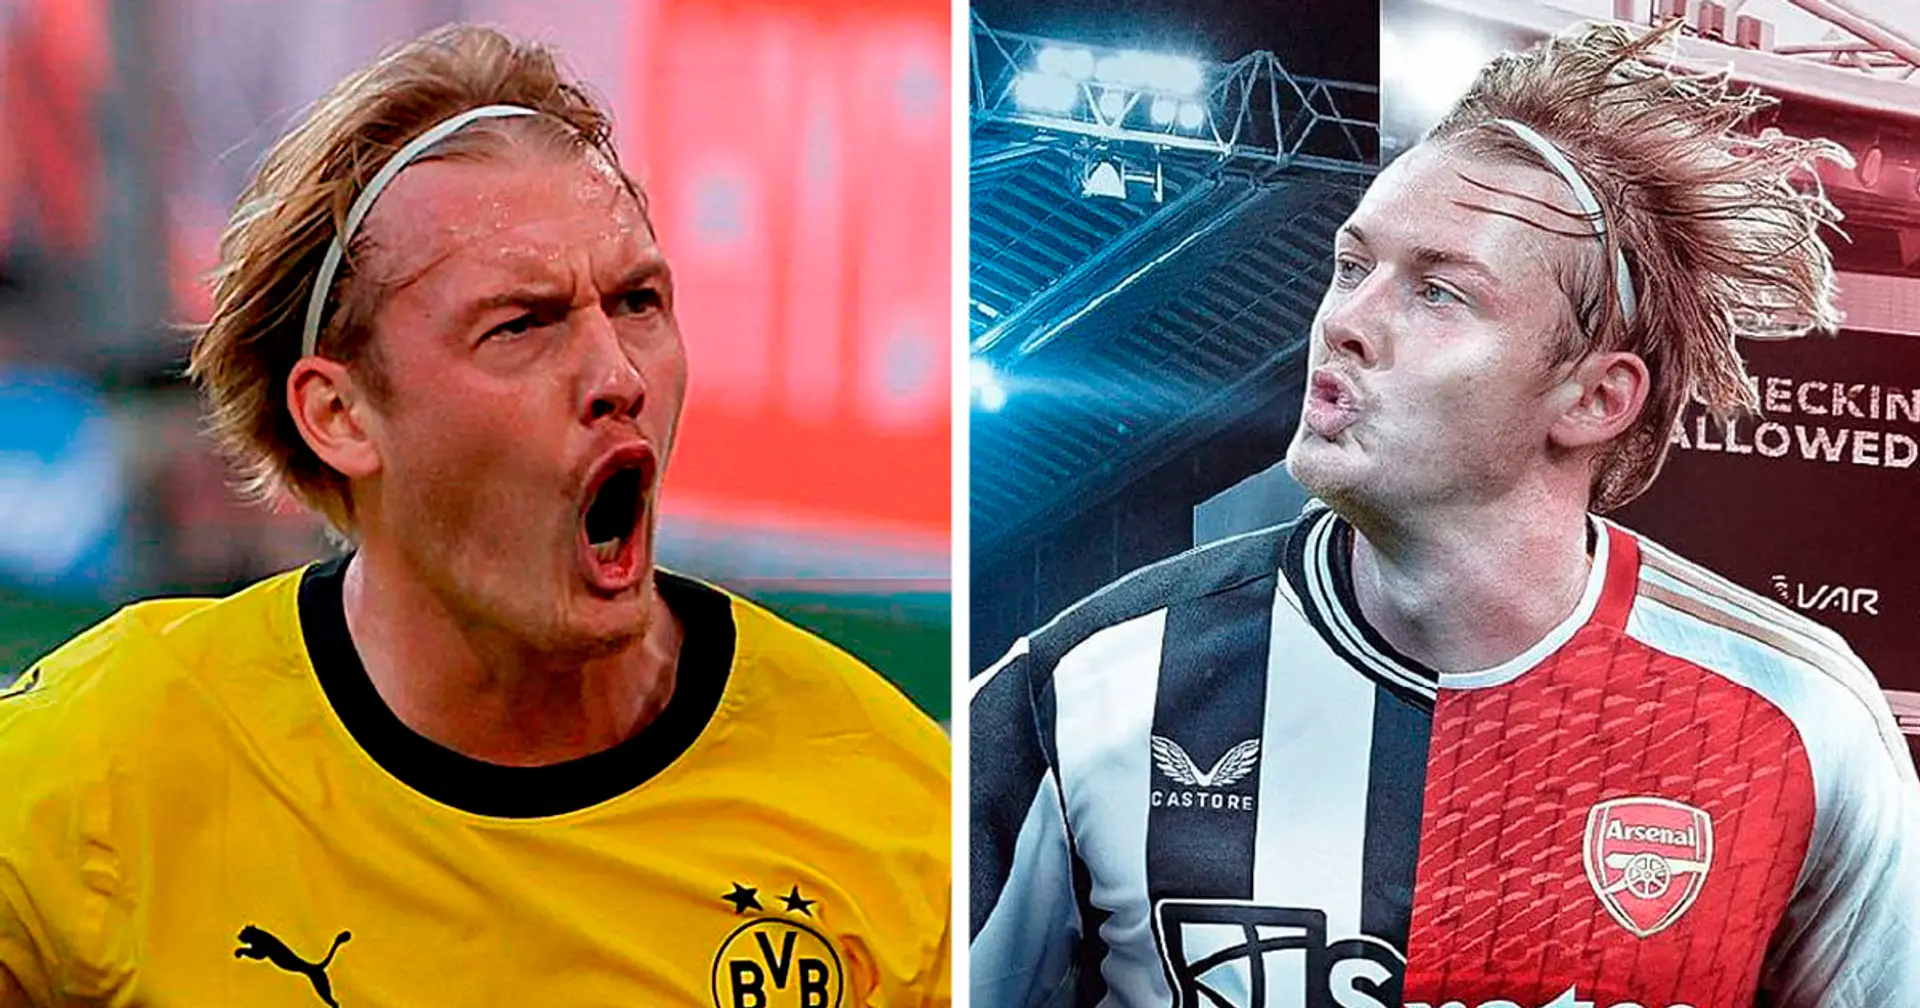 Deshalb wird Brandt beim BVB bleiben: Weder Arsenal noch Newcastle brauchen ihn im Kader